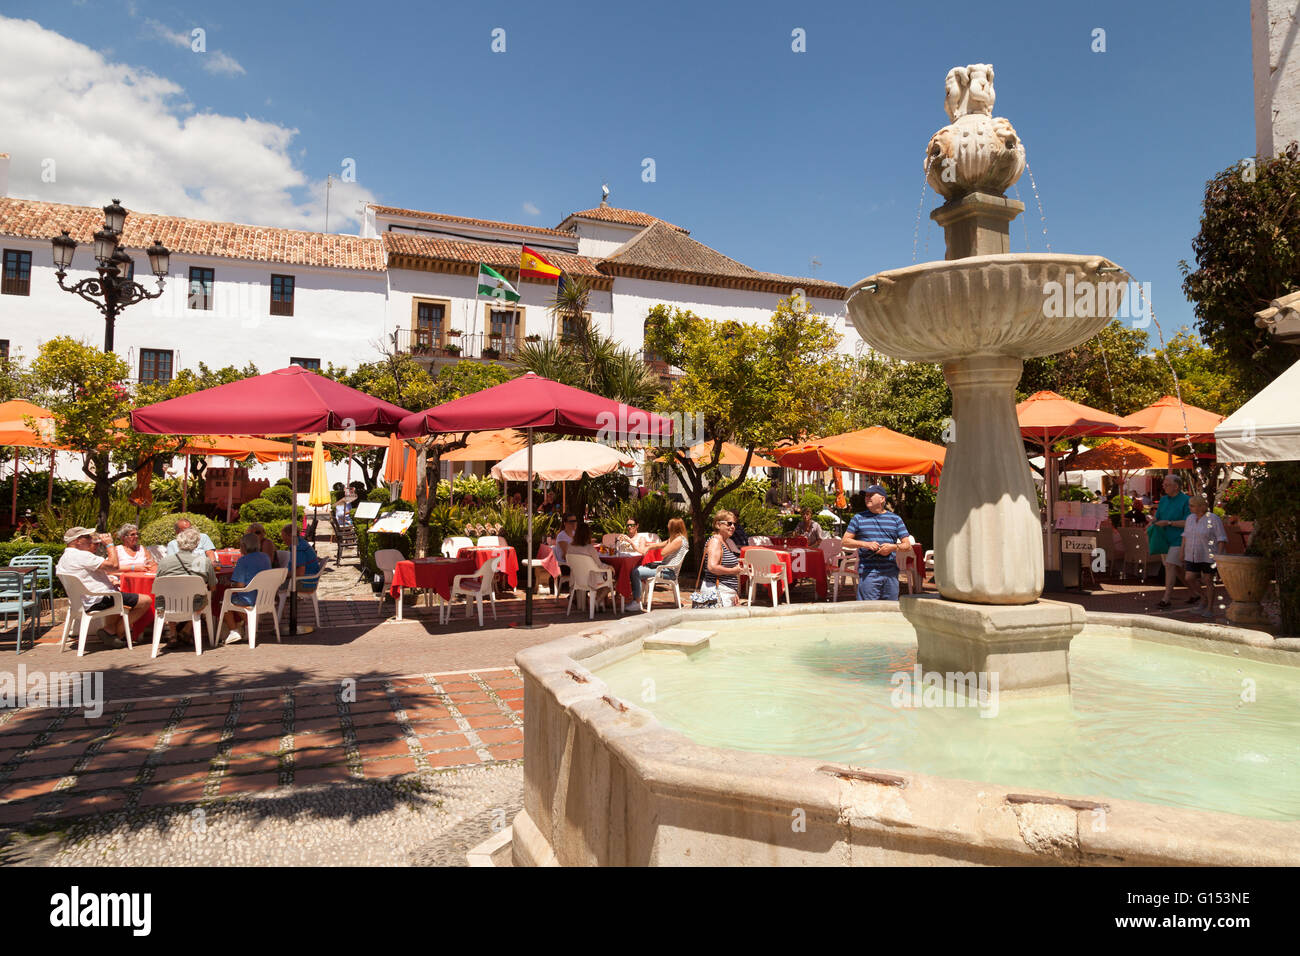 Fontaine et cafés, carré orange ( Plaza de los Naranjos ), Vieille Ville, Marbella, Andalousie, Espagne Banque D'Images